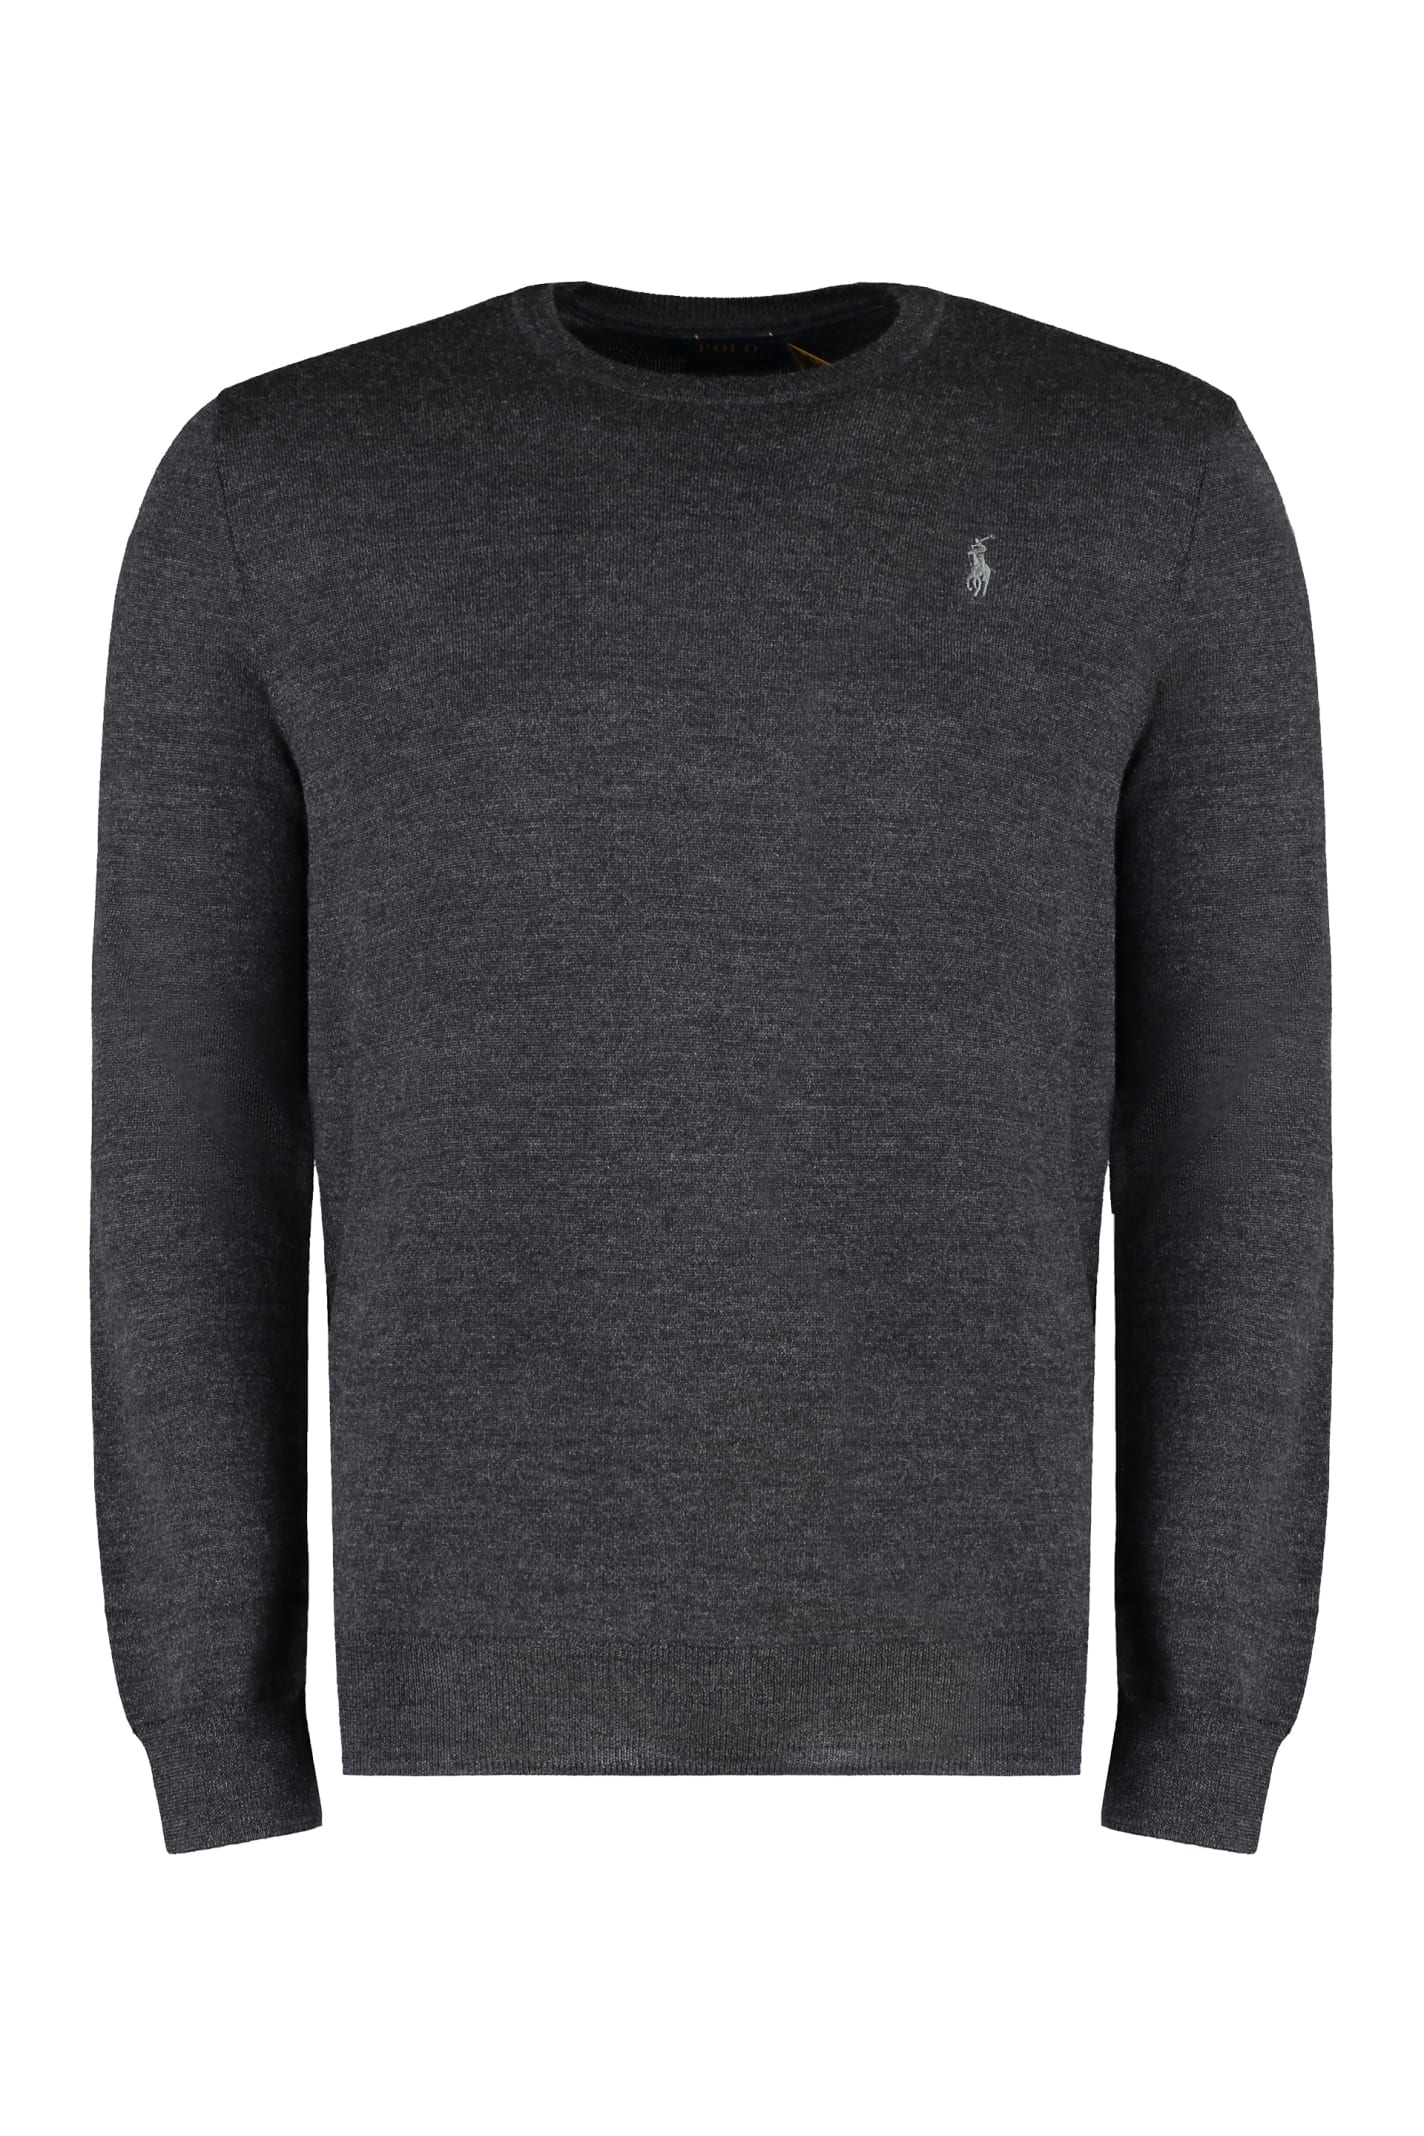 Shop Ralph Lauren Wool Crew-neck Sweater